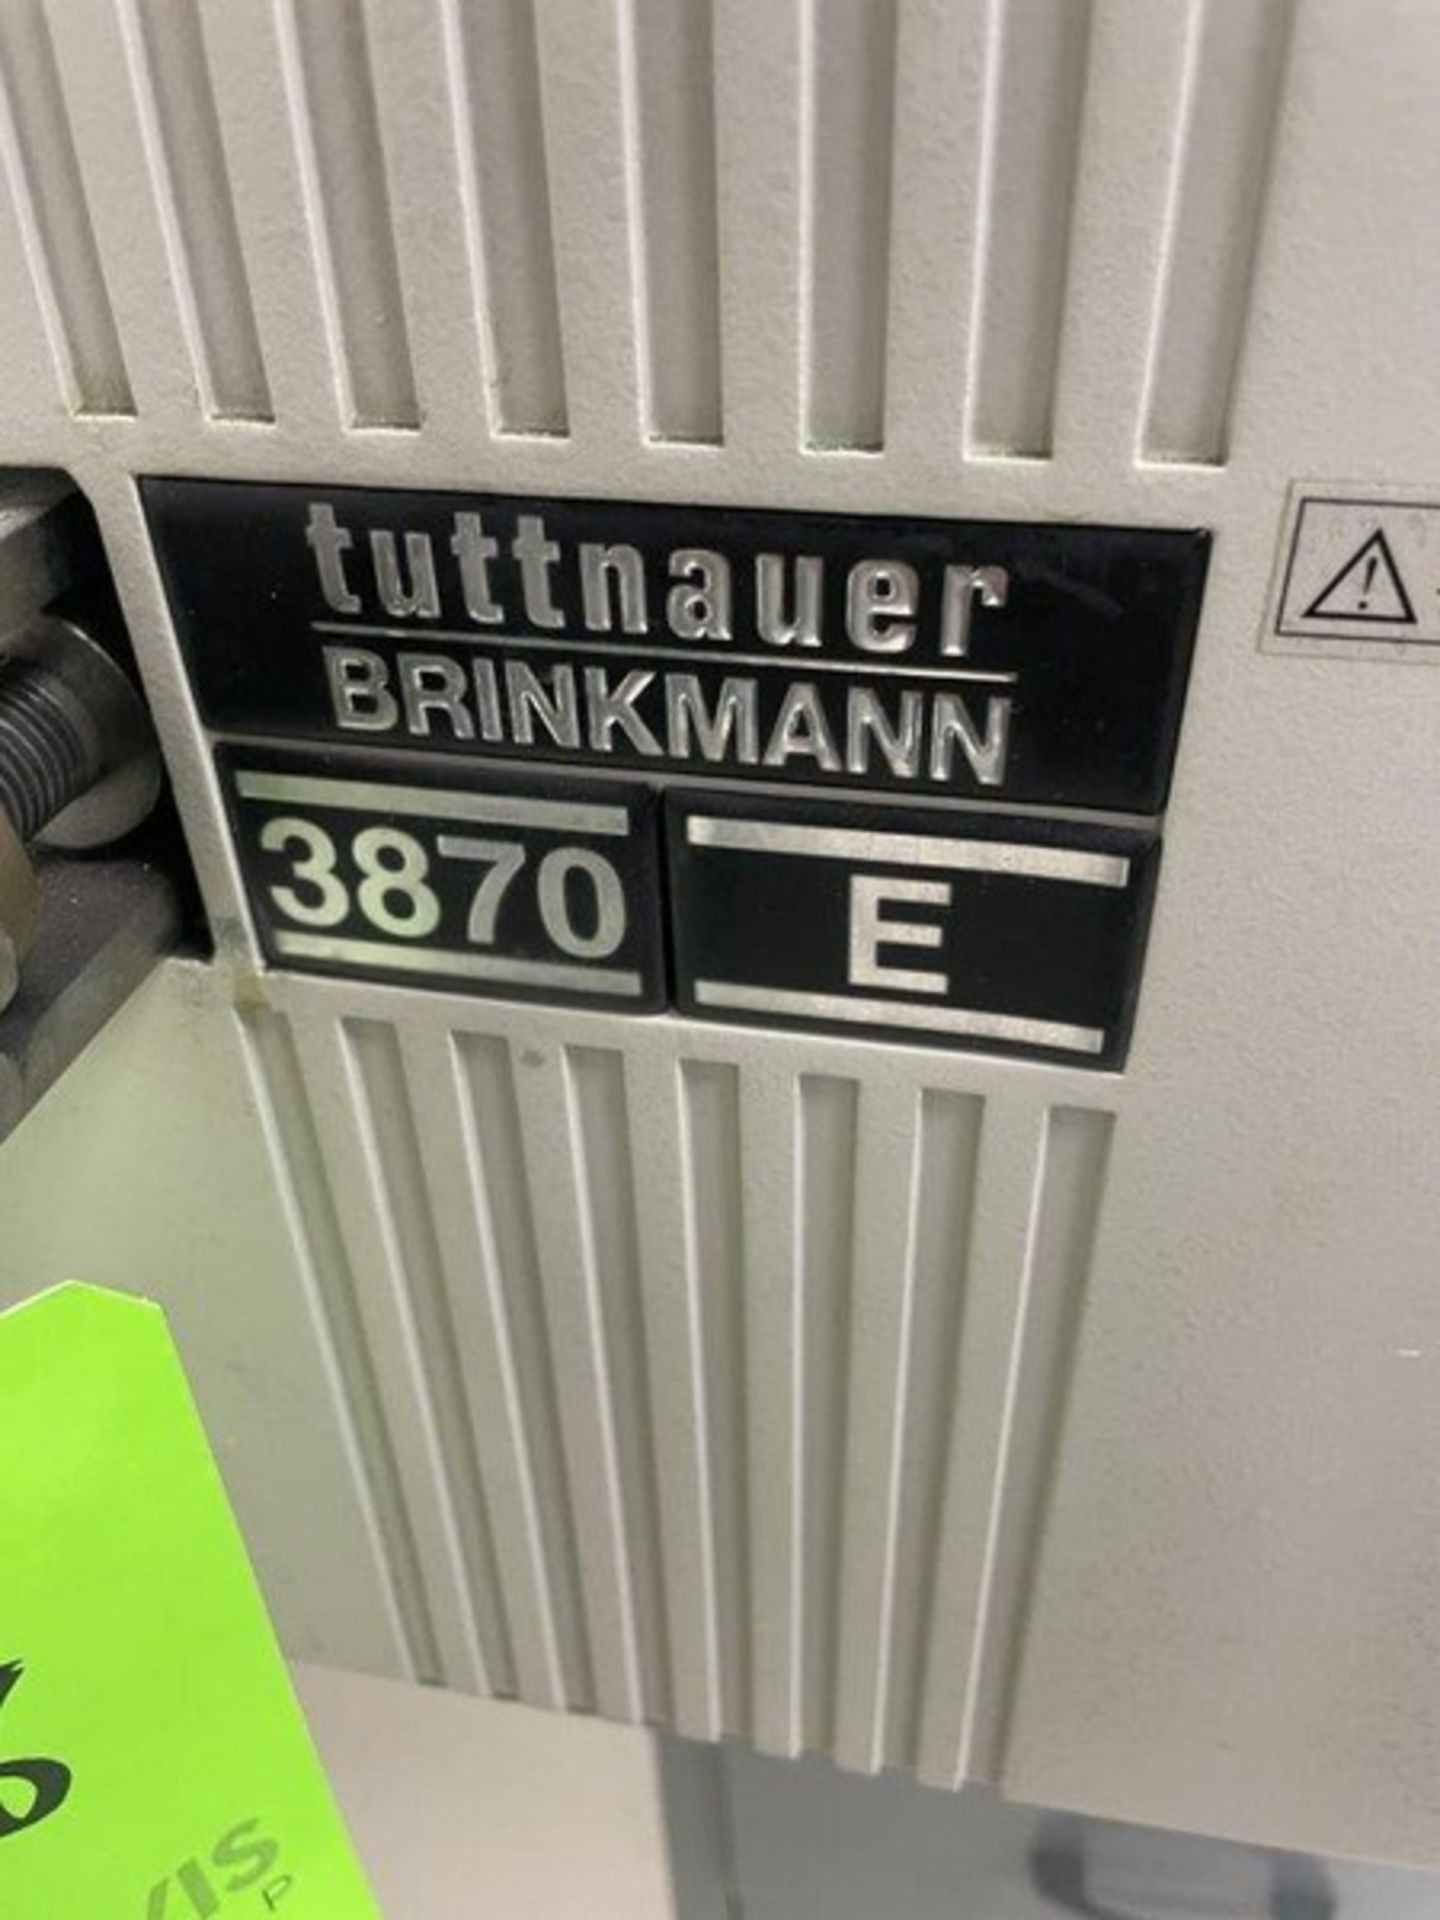 Tuttnauer Brinkmann 3870 E Lab Oven - Image 3 of 5